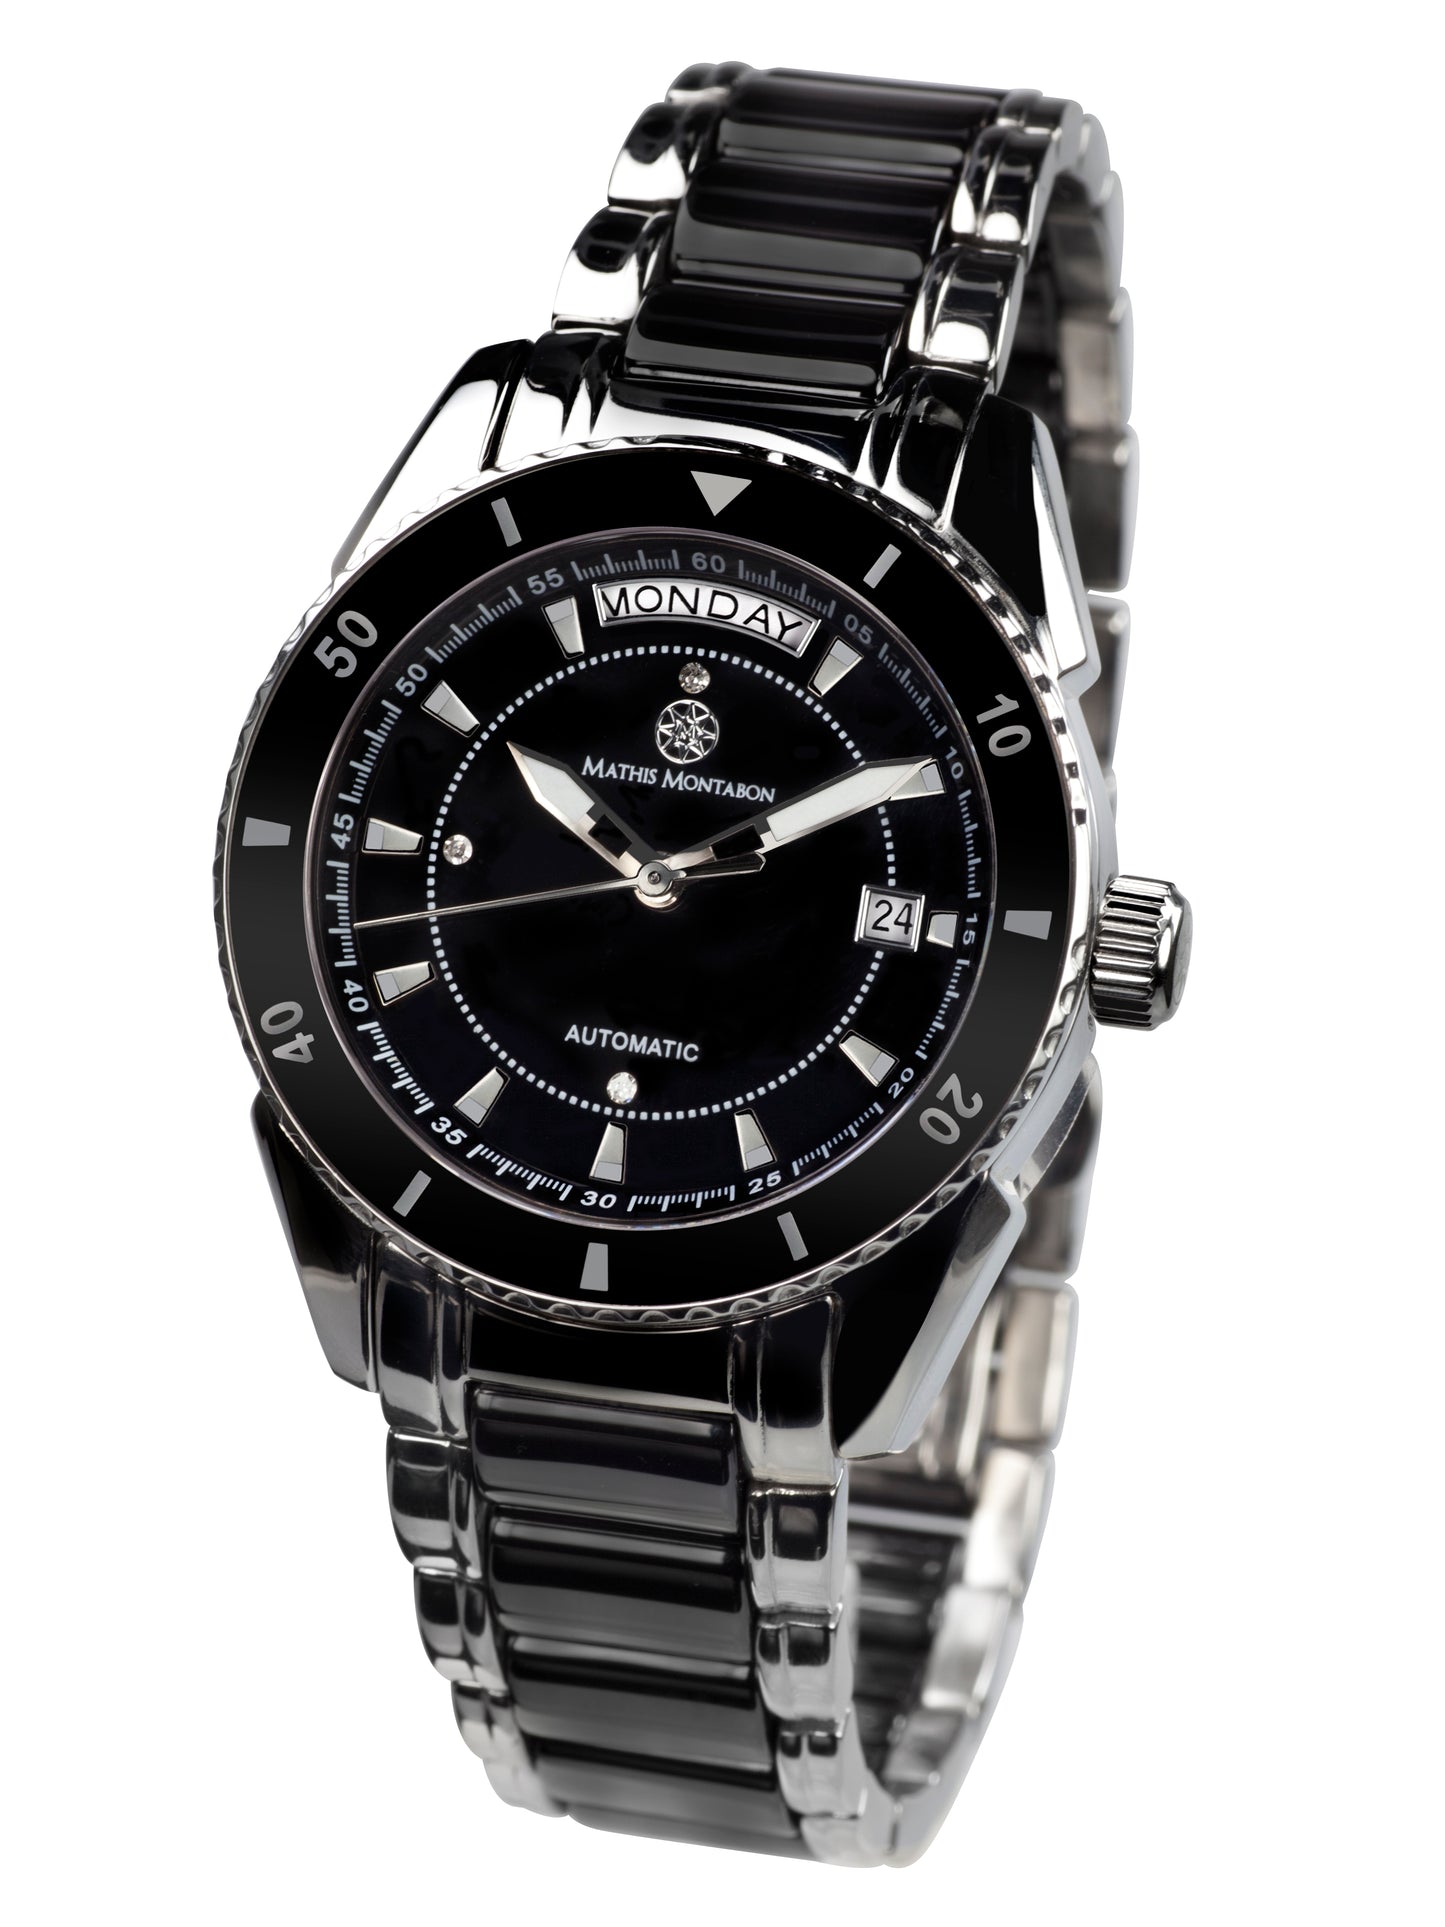 Automatic watches — La Magnifique — Mathis Montabon — schwarz